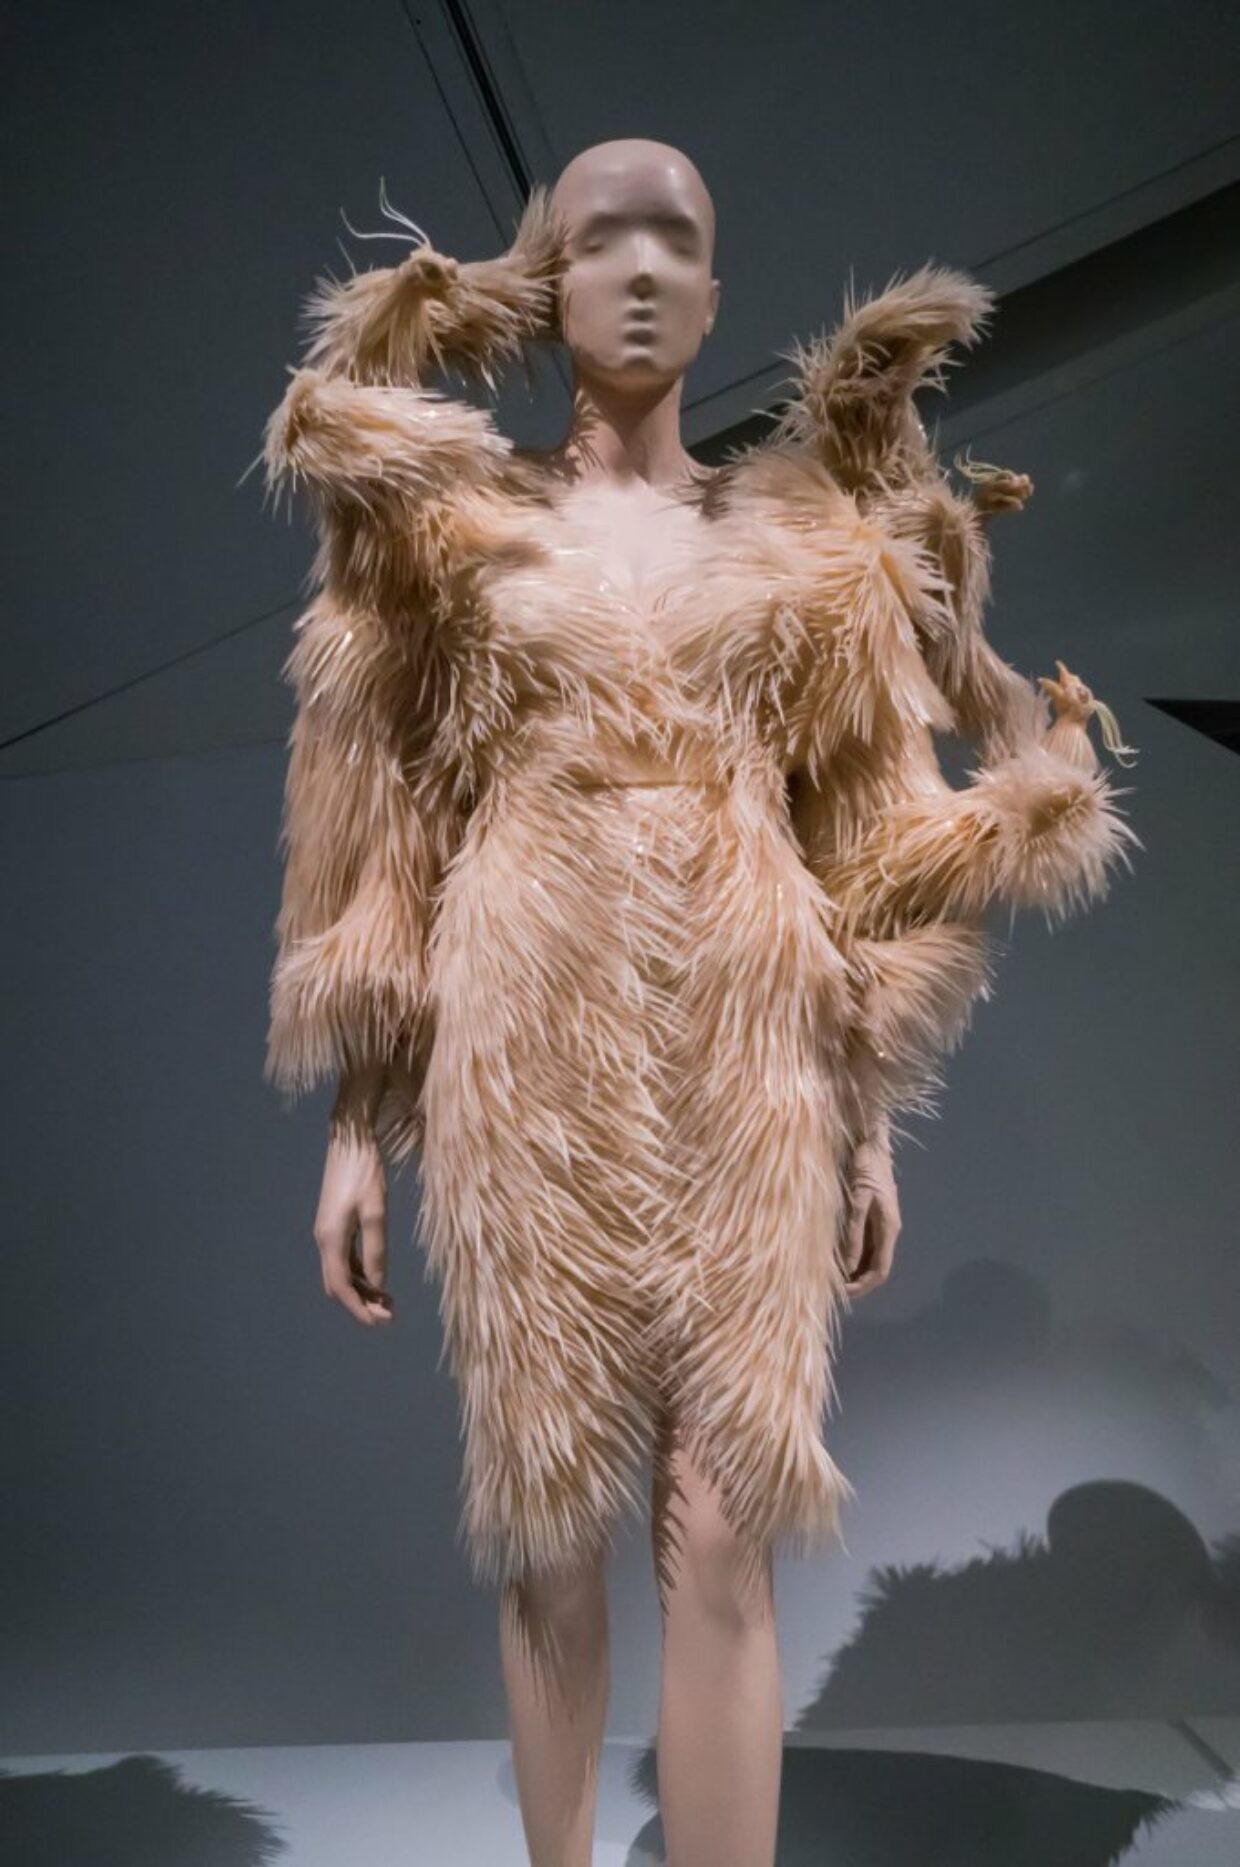 Iris Van Herpen: “Transforming Fashion” at the Royal Ontario Museum | 6